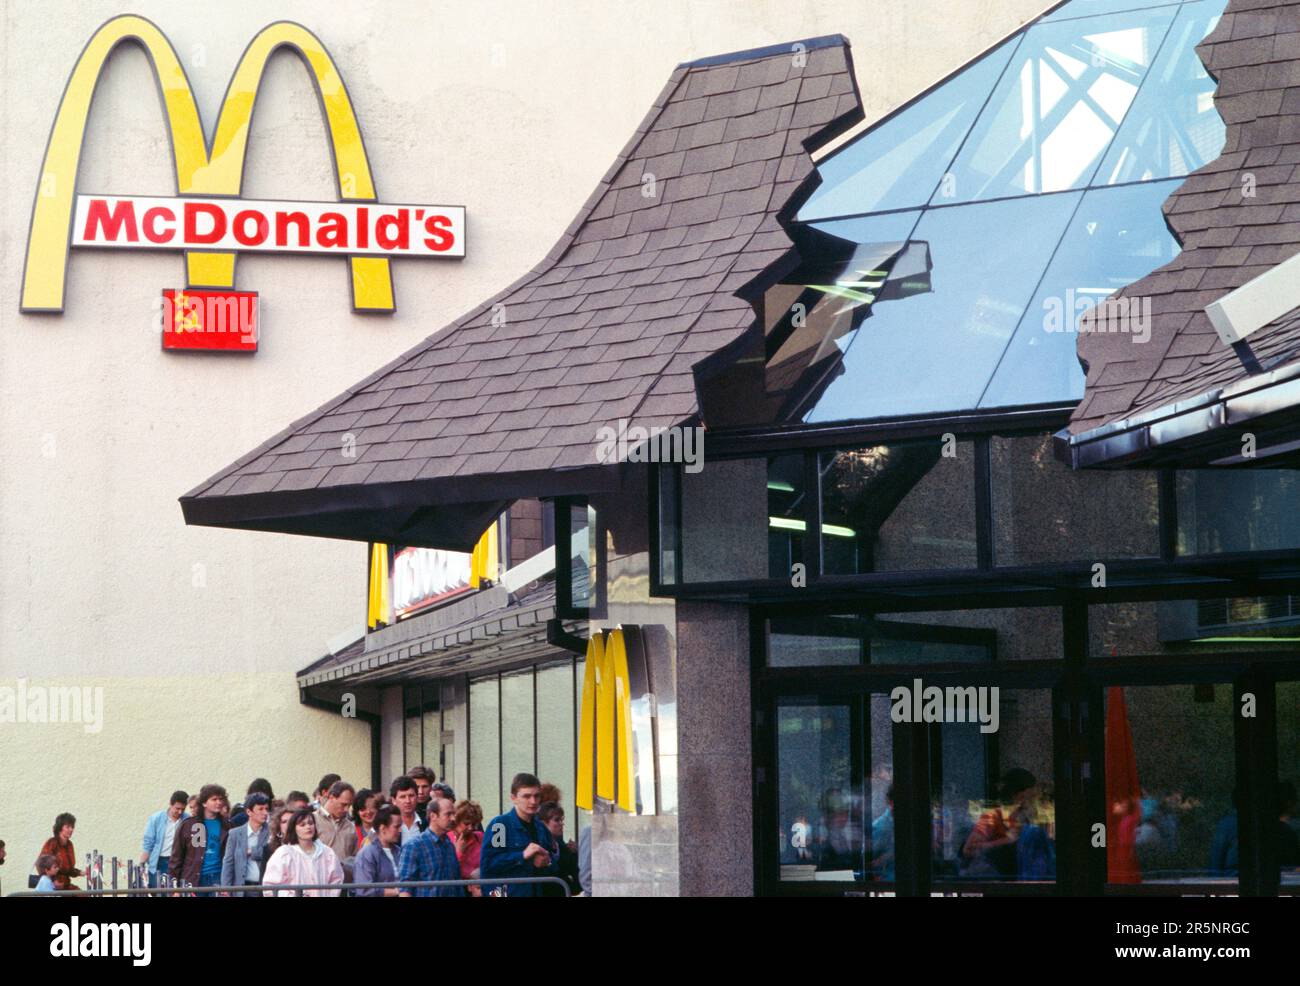 Eintritt zum ersten Fast-Food-Restaurant von McDonald's in Moskau, Russland, in der Sowjetunion im Jahr 1991. Das Restaurant mit 900 Plätzen wurde am 31. Januar 1990 in der Morgendämmerung am Puschkin-Platz im Zentrum von Moskau eröffnet. Die Sowjetunion endete am 31. Dezember 1991. McDonald’s hat 2022 seine Geschäftstätigkeit in Russland eingestellt und das Restaurant unter russischer Leitung unter dem Namen Vkusno & tochka (lecker und das war's dann) wieder eröffnet. Stockfoto